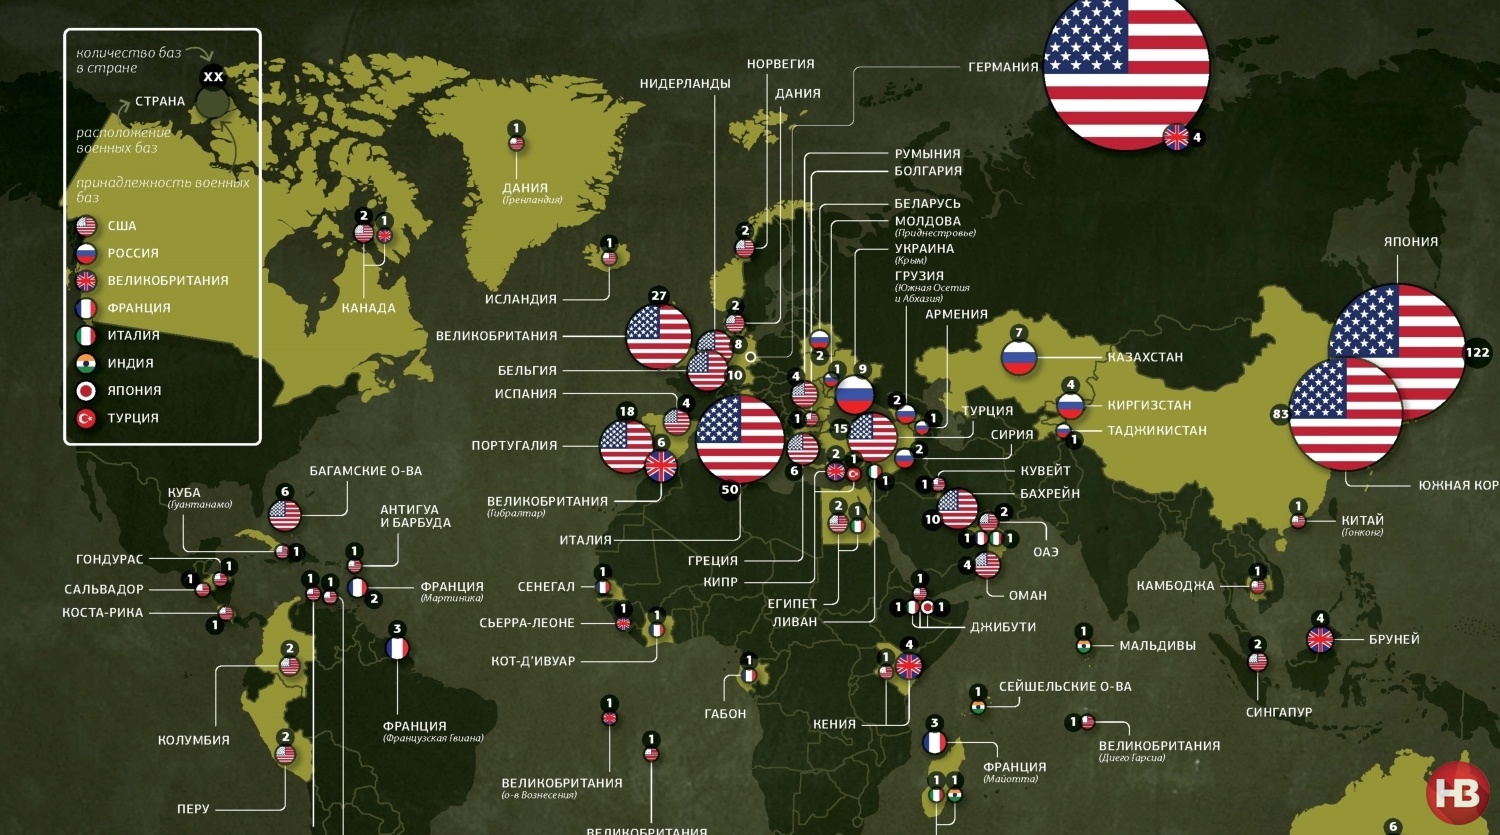 Фактическое расположение. Базы НАТО И армии США В мире.